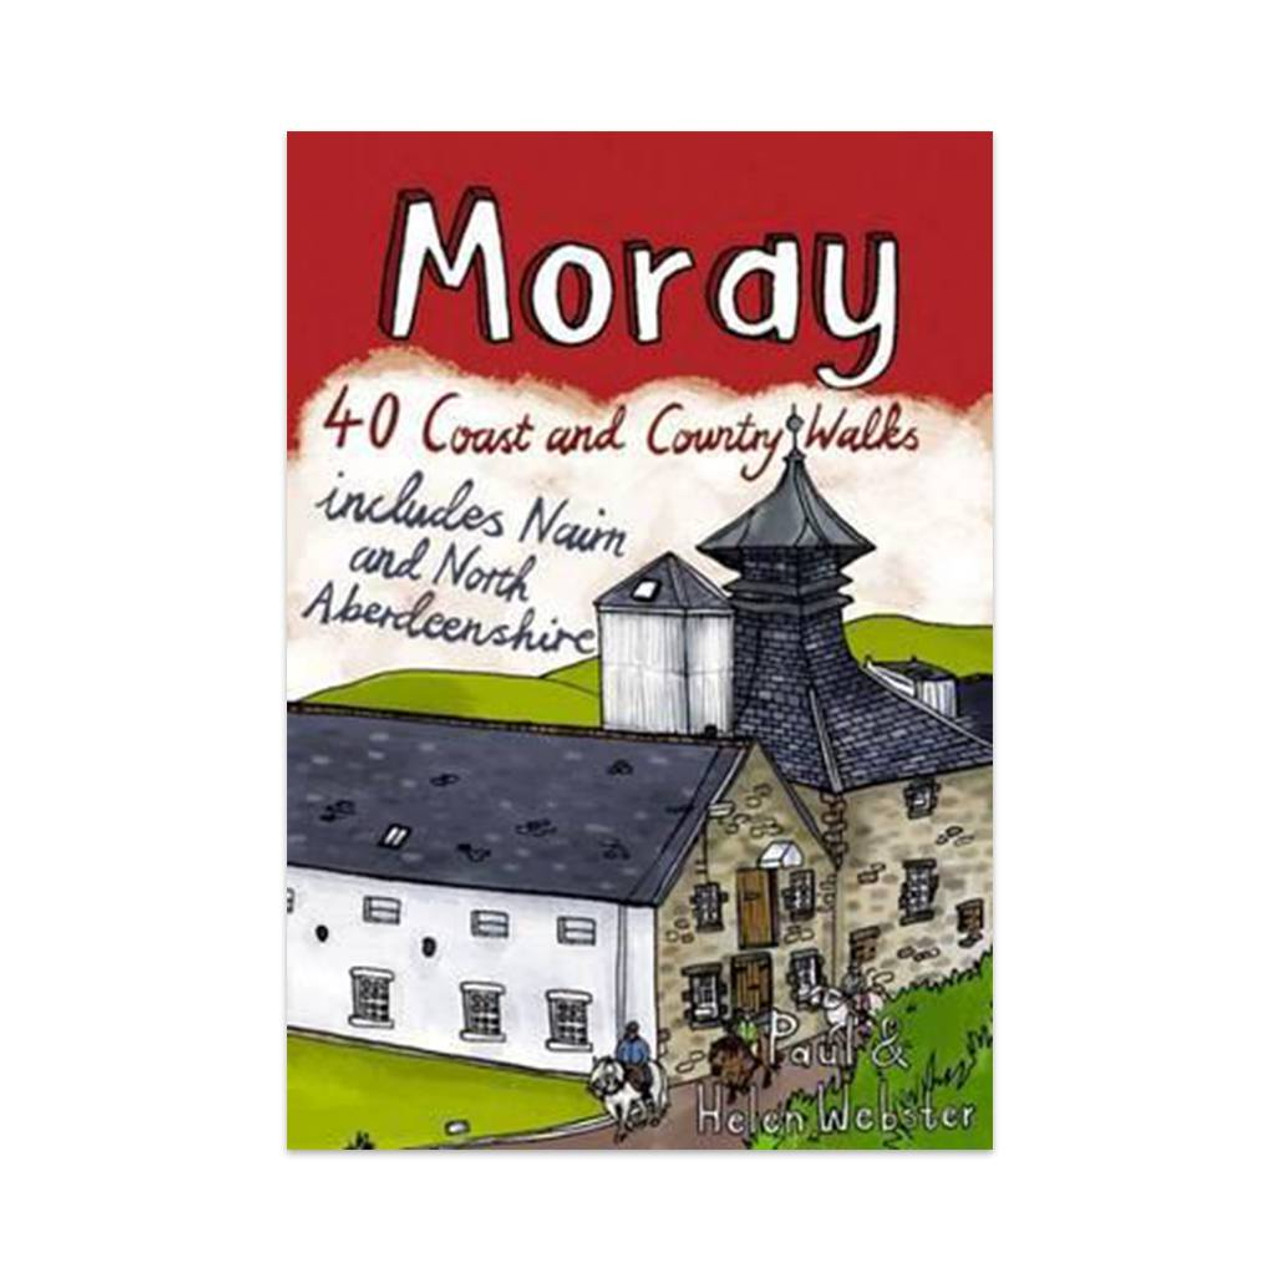 Moray: 40 CoastandCountry Walks